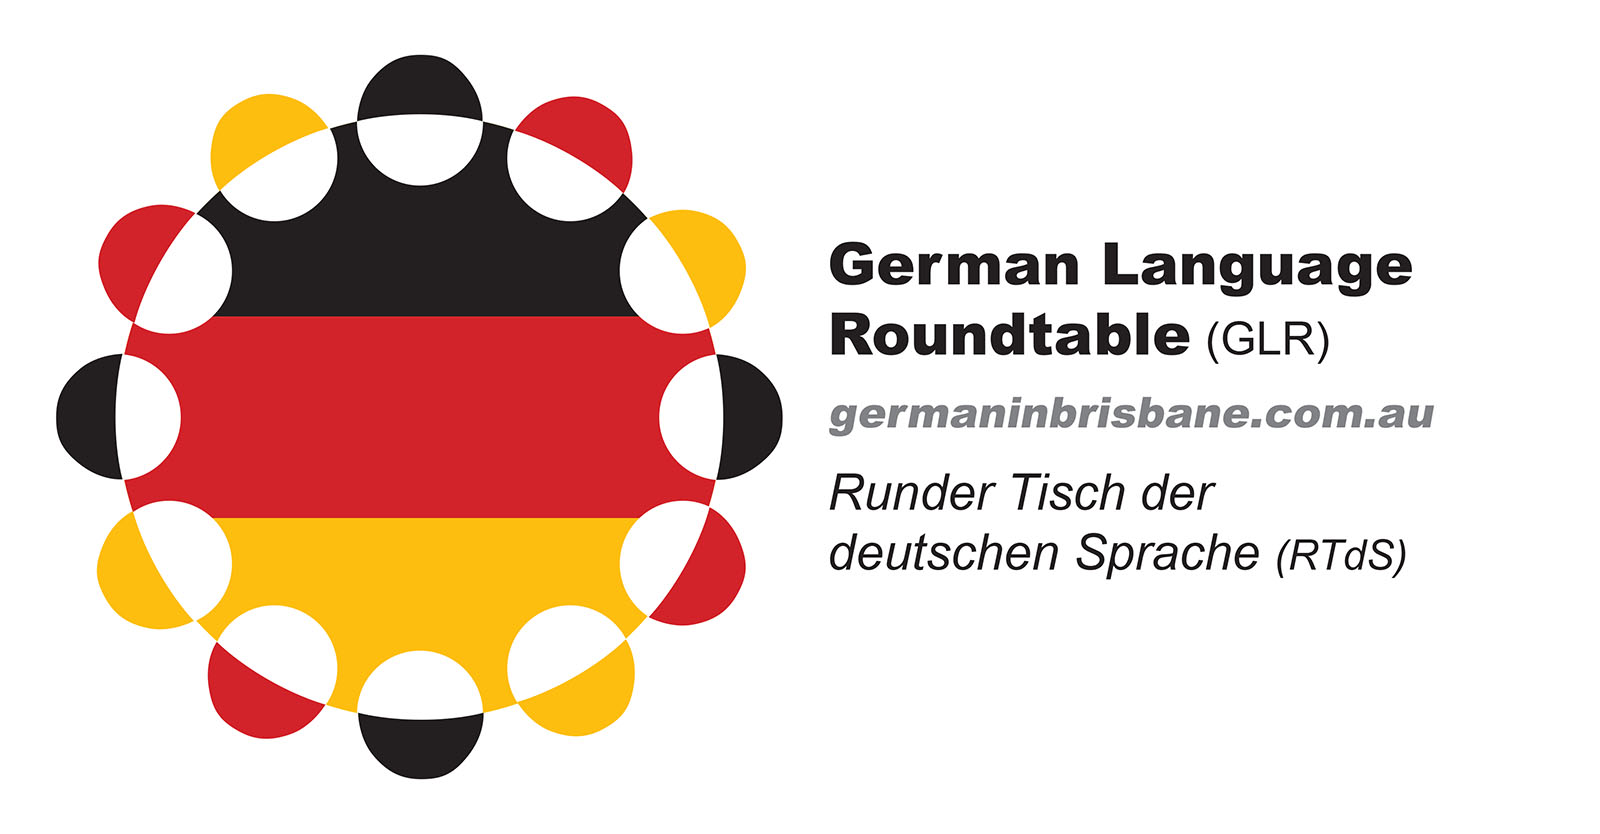 He speaks german. Немецкий язык. Эмблема немецкого языка. Современный немецкий язык. Эмблема Германии.